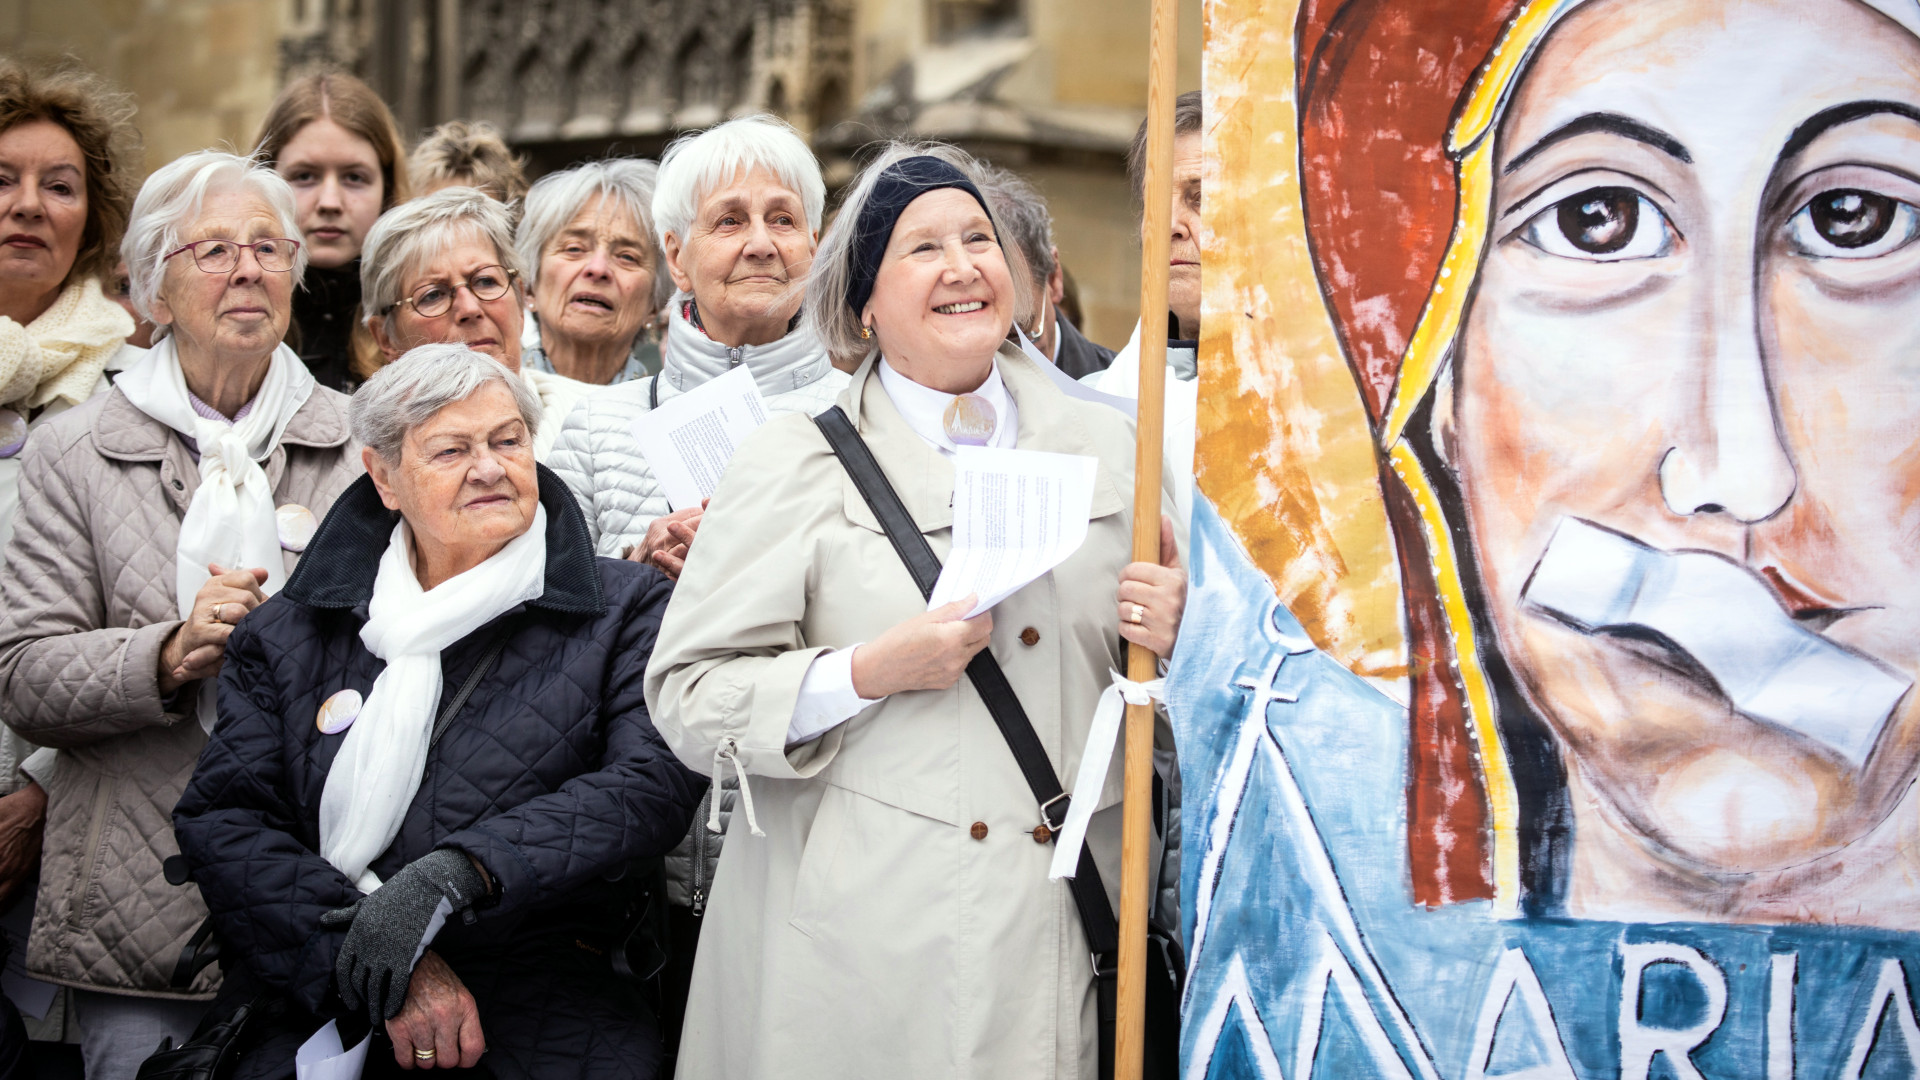 En mai 2019, le mouvement Maria. 2.0 avait appelé à une "grève de l'Eglise", avec des femmes tenant une affiche avec la Vierge  bouche fermée, lors d'une veillée du mouvement devant la cathédrale de Münster |  ©DNA